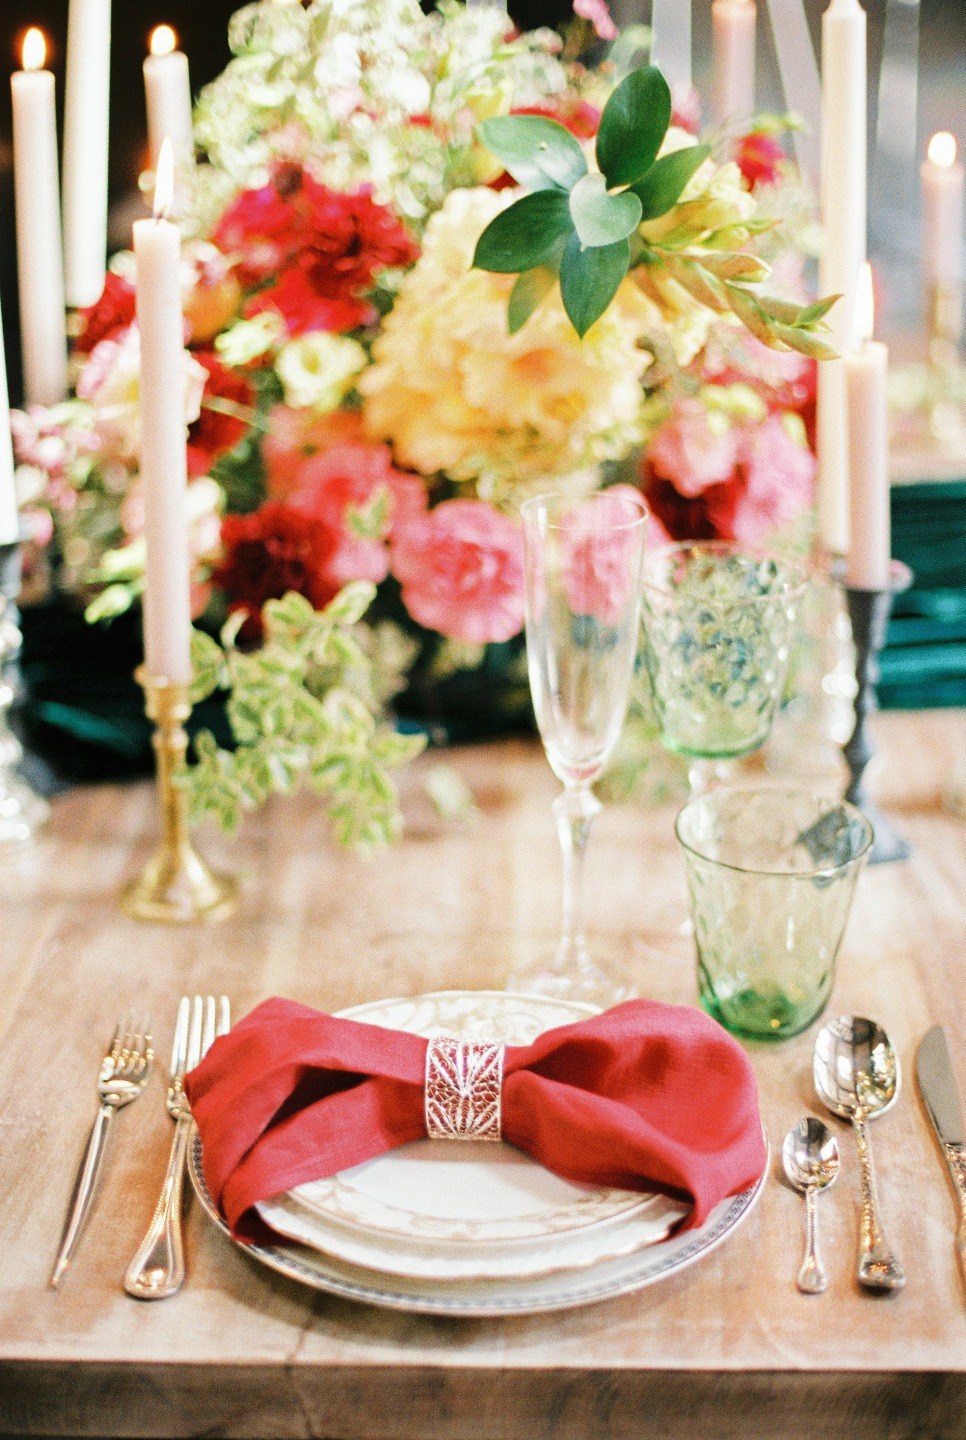 Свадебный стол оформление: варианты украшения стола молодоженов, декор своими руками